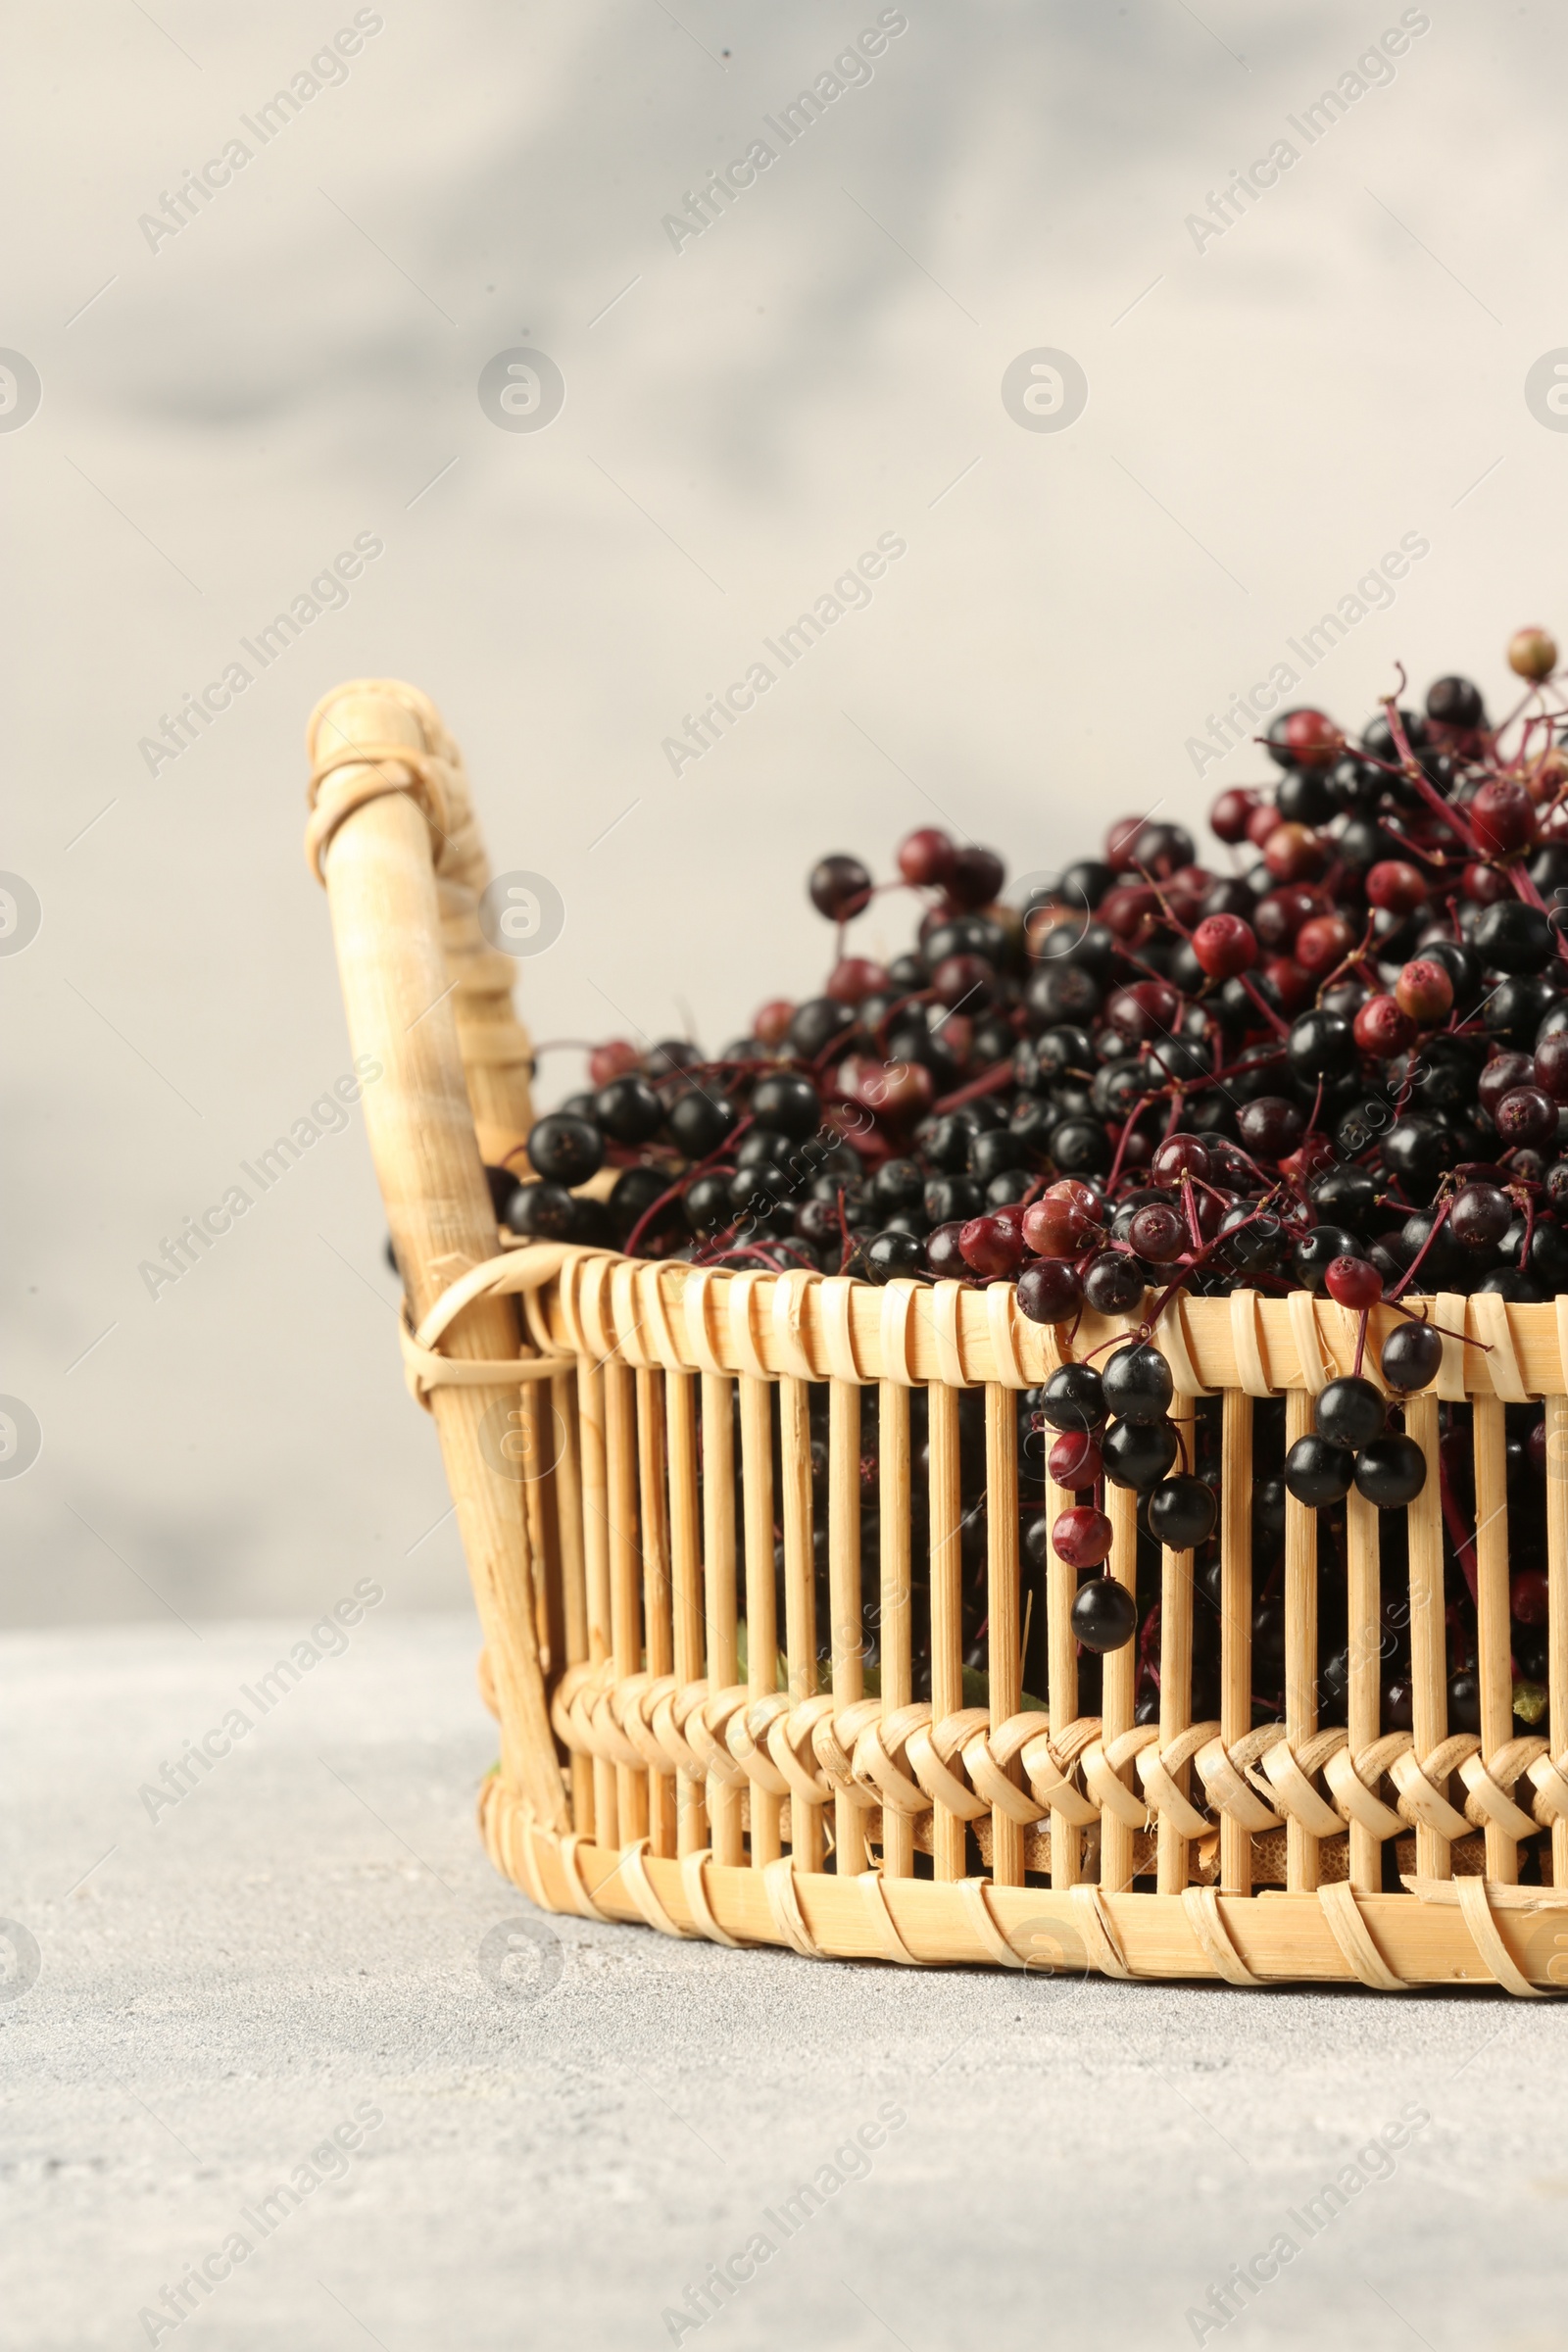 Photo of Ripe elderberries in wicker basket on light grey table